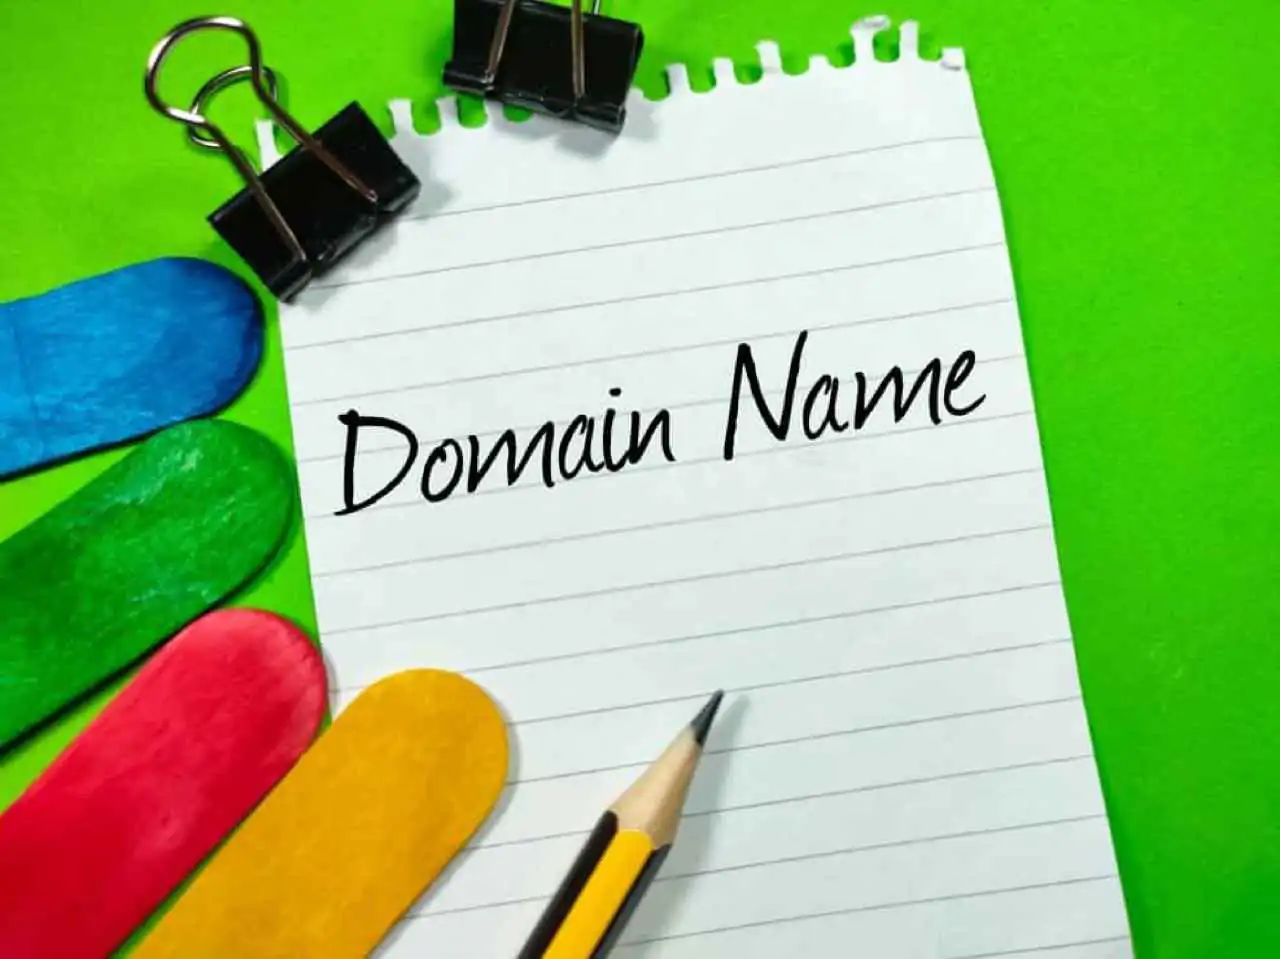 Jeśli chcesz stworzyć swoją stronę internetową to zakup domeny będzie niezbędnym krokiem, jaki musisz wykonać.